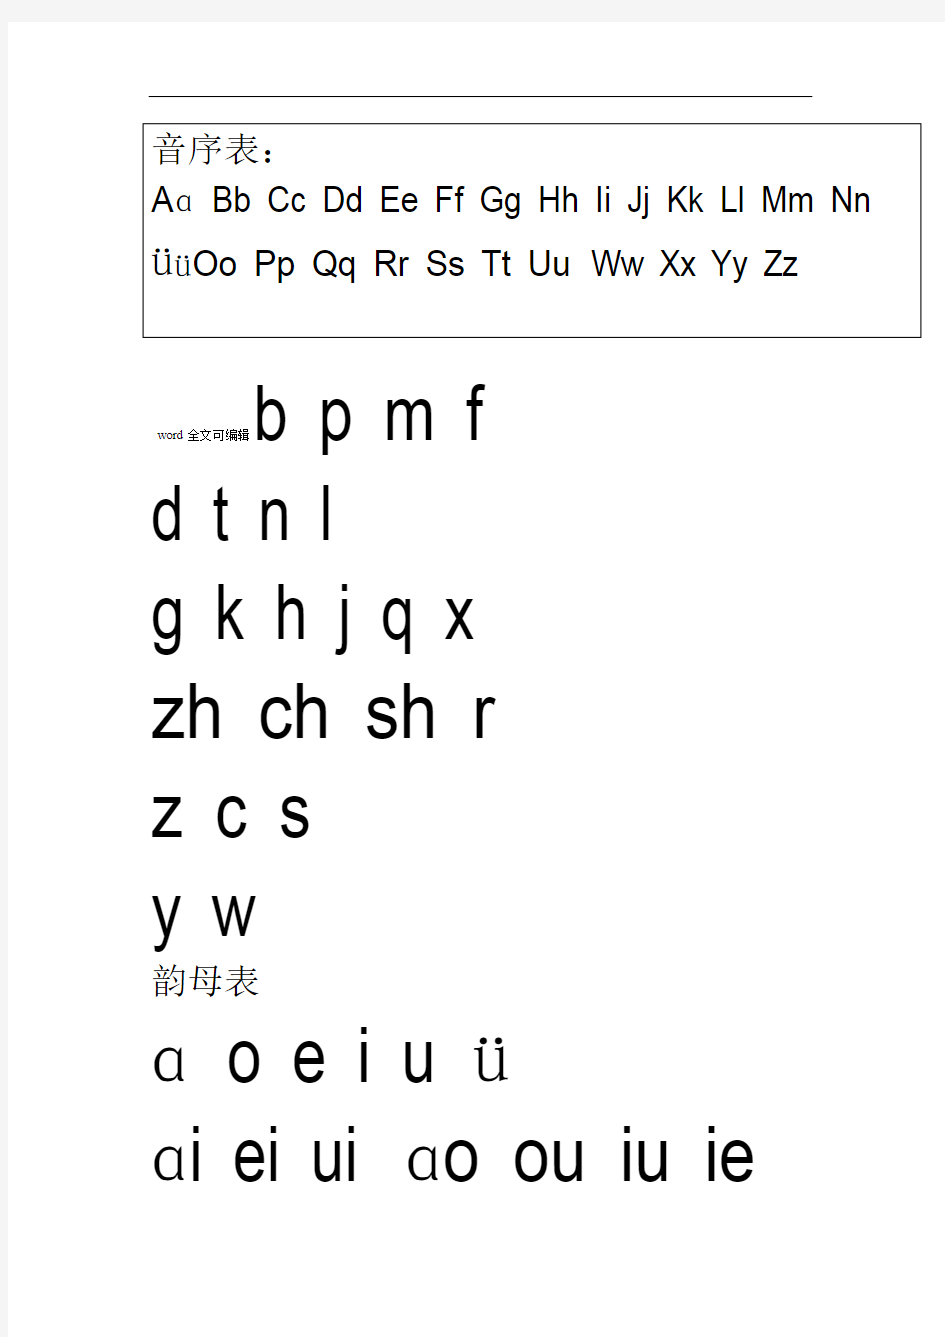 汉语拼音字母表及全音节表打印版